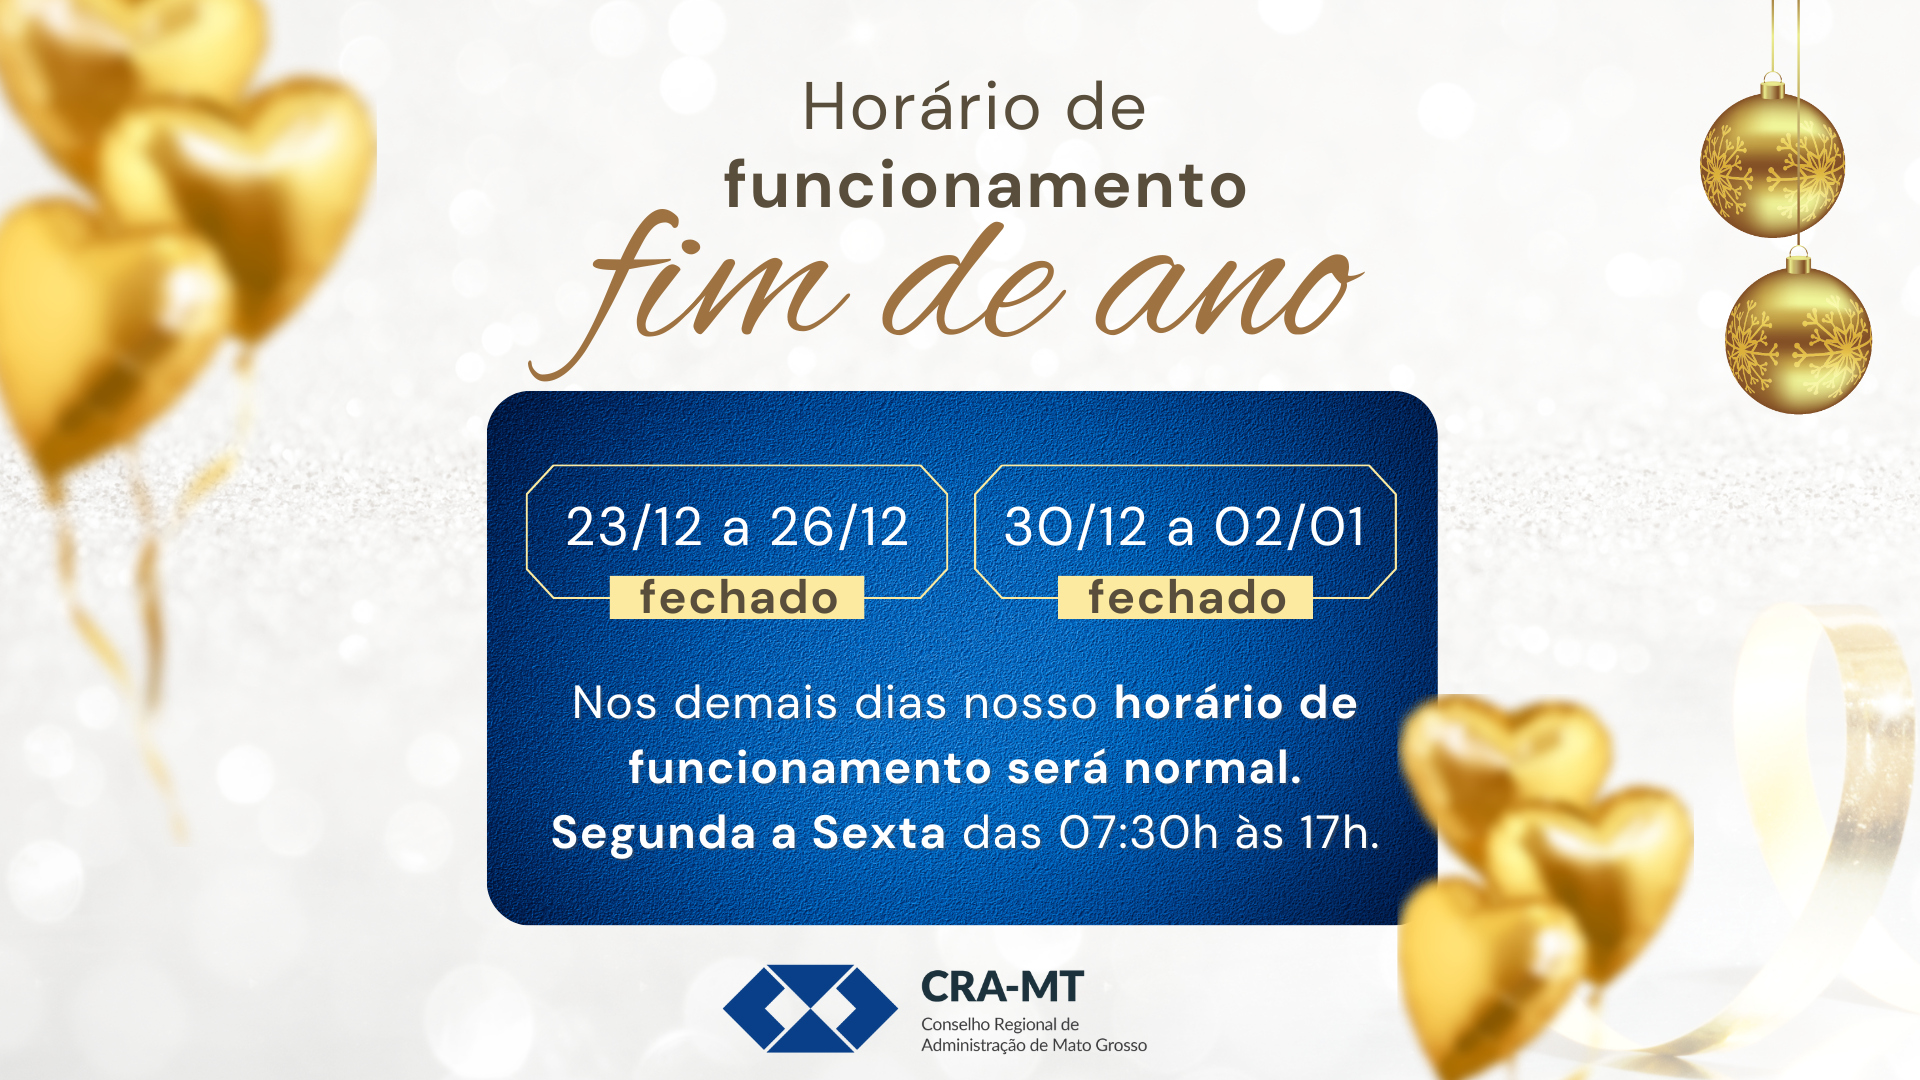 You are currently viewing Horário de Funcionamento do CRA-MT nesse fim de ano.